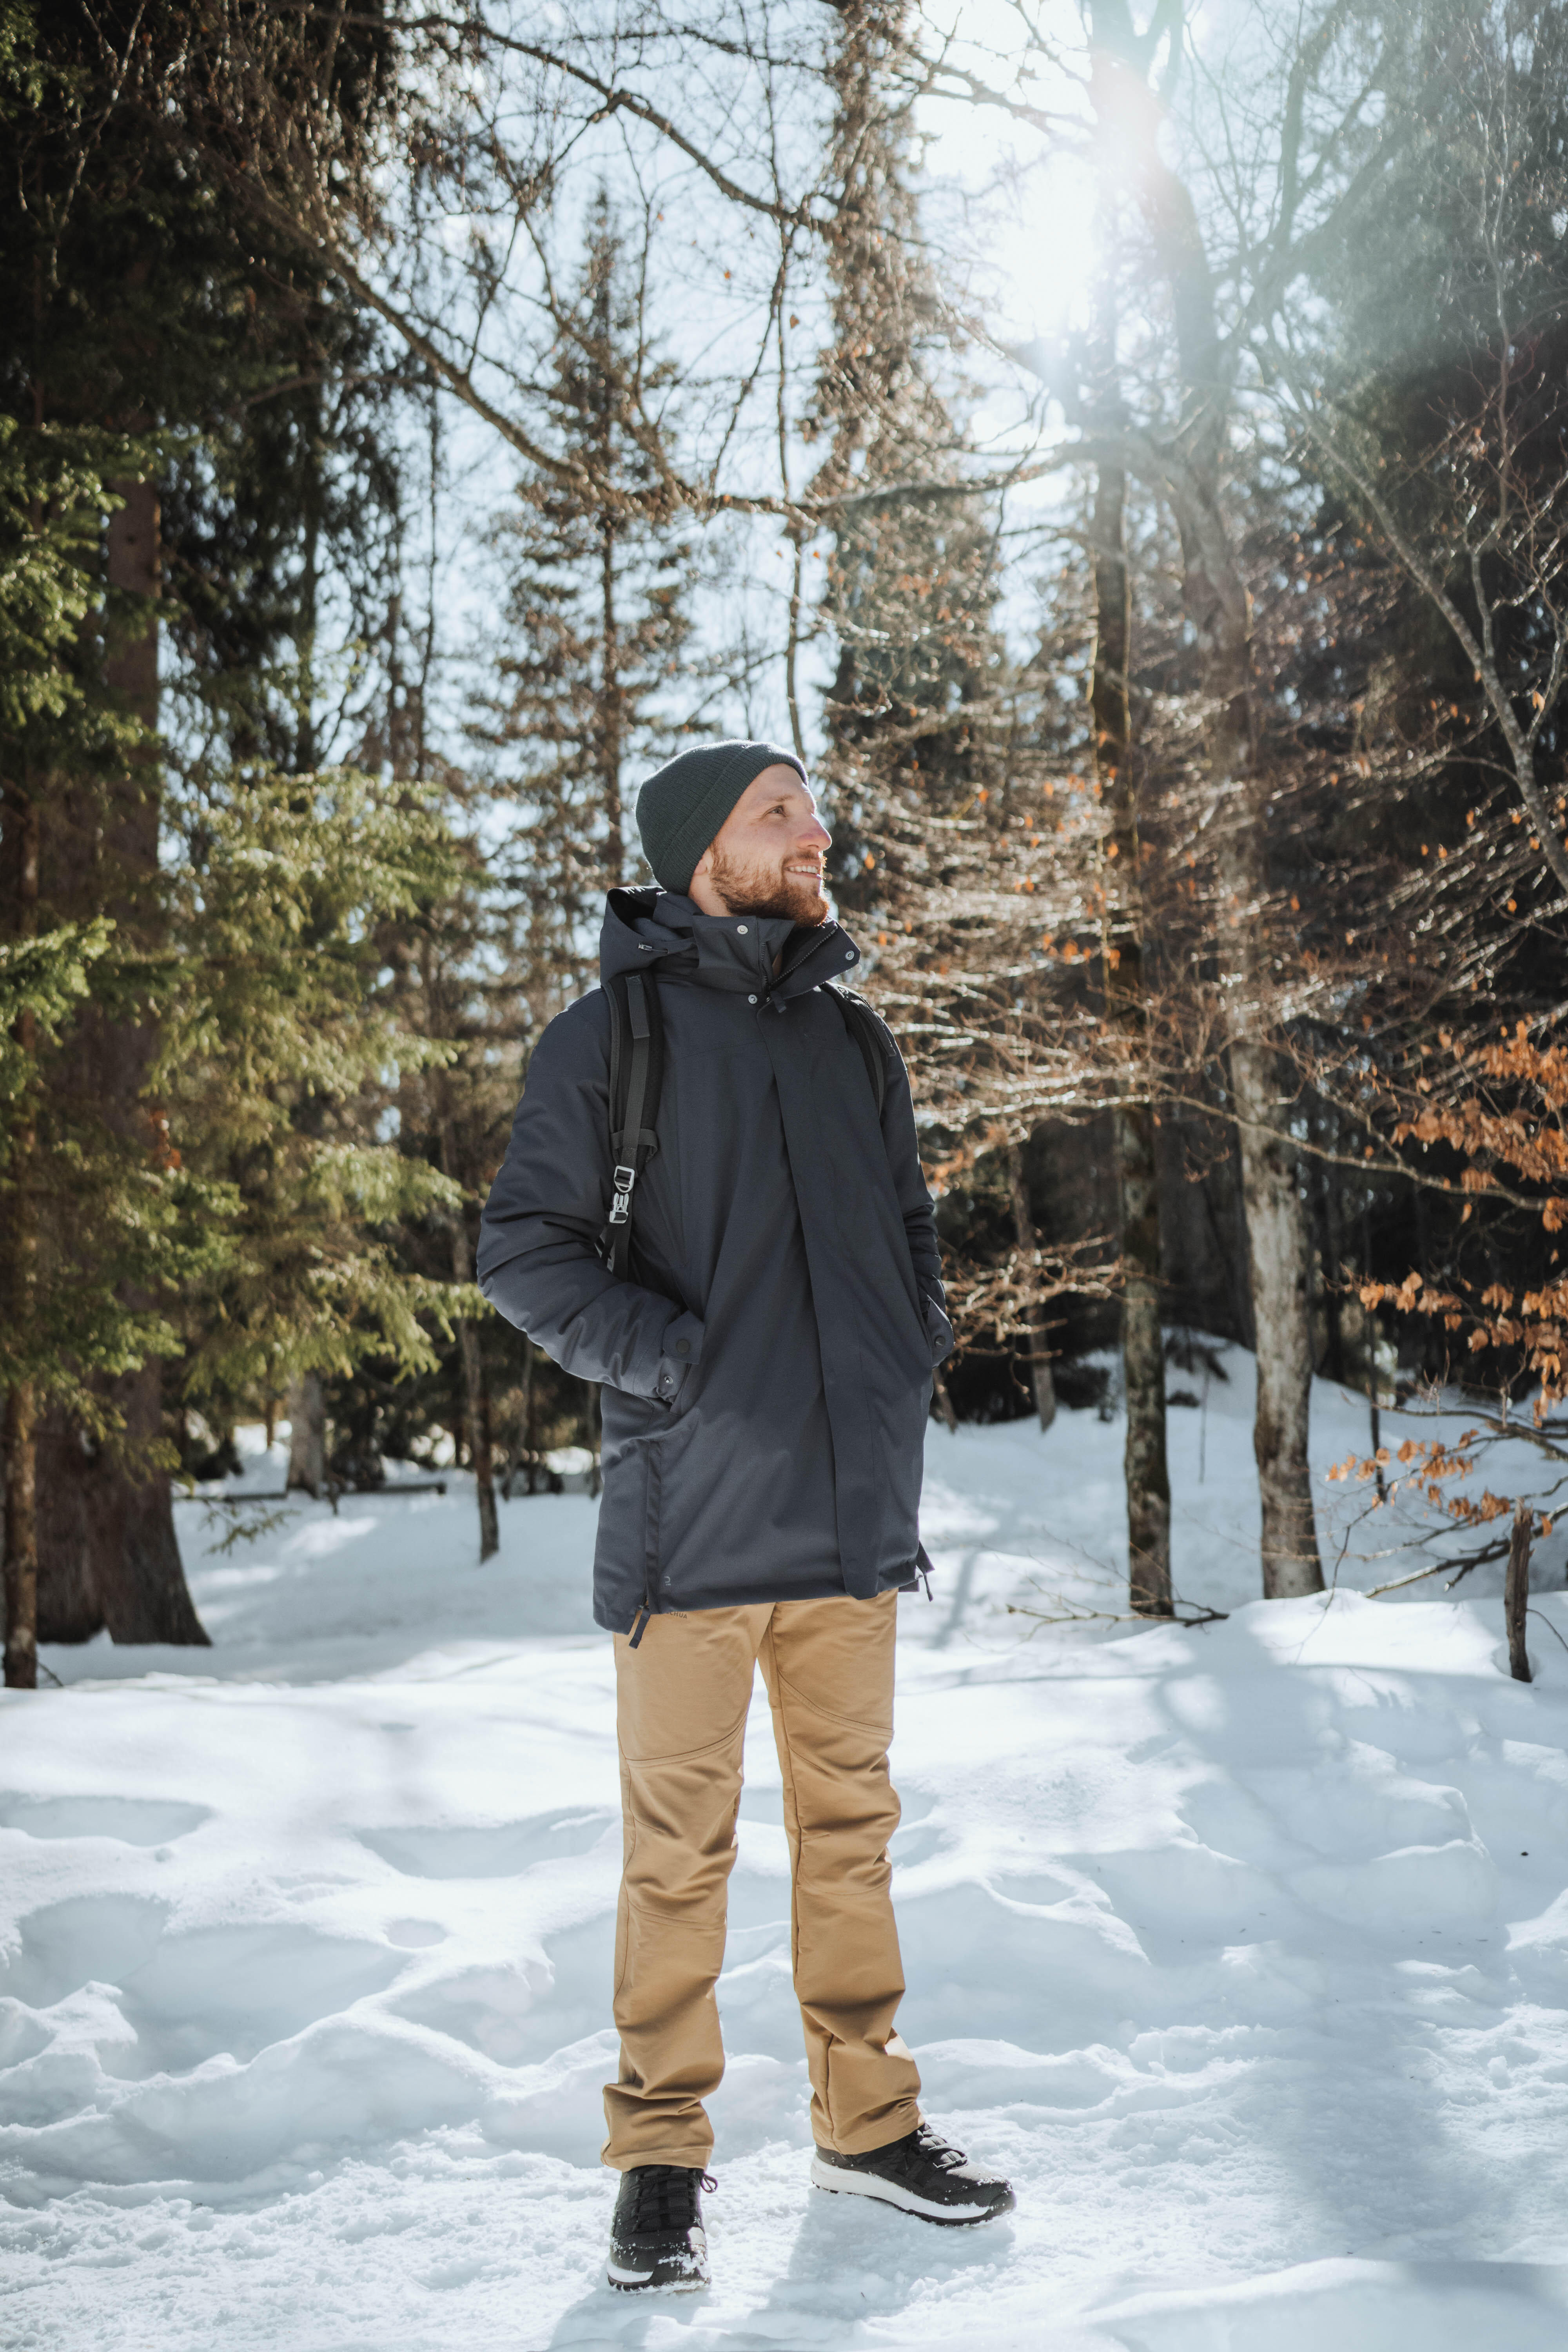 Buy Mens Snow Hiking Jacket Warm 5°C Water Repellant Online